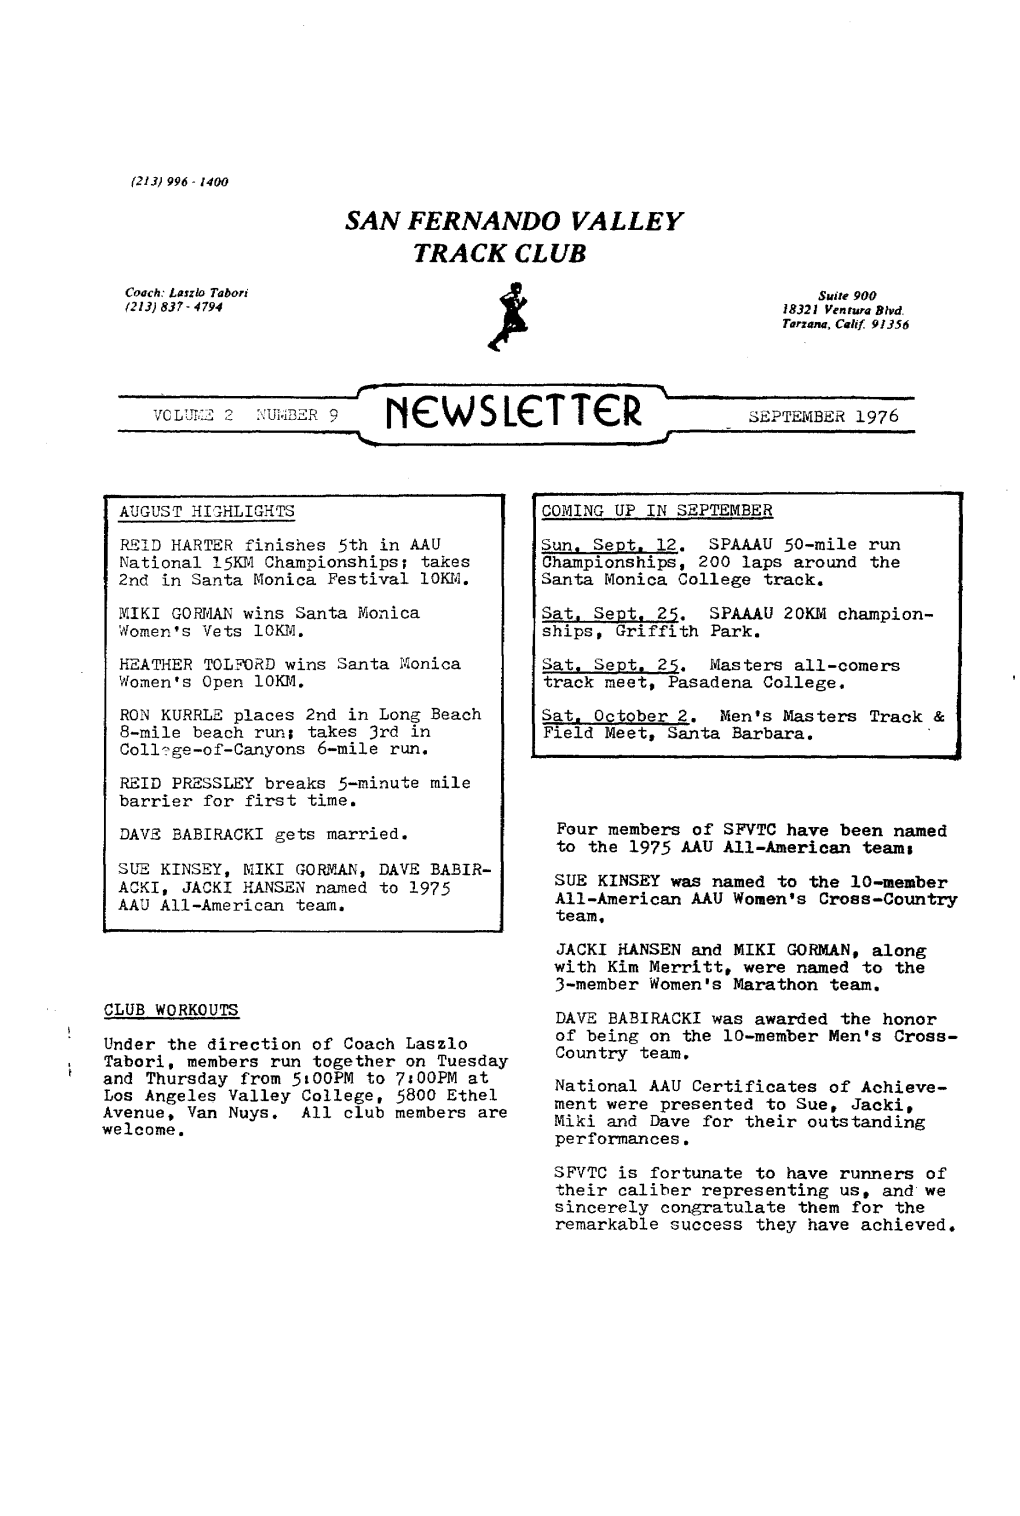 SFVTC Newsletter of September 1976